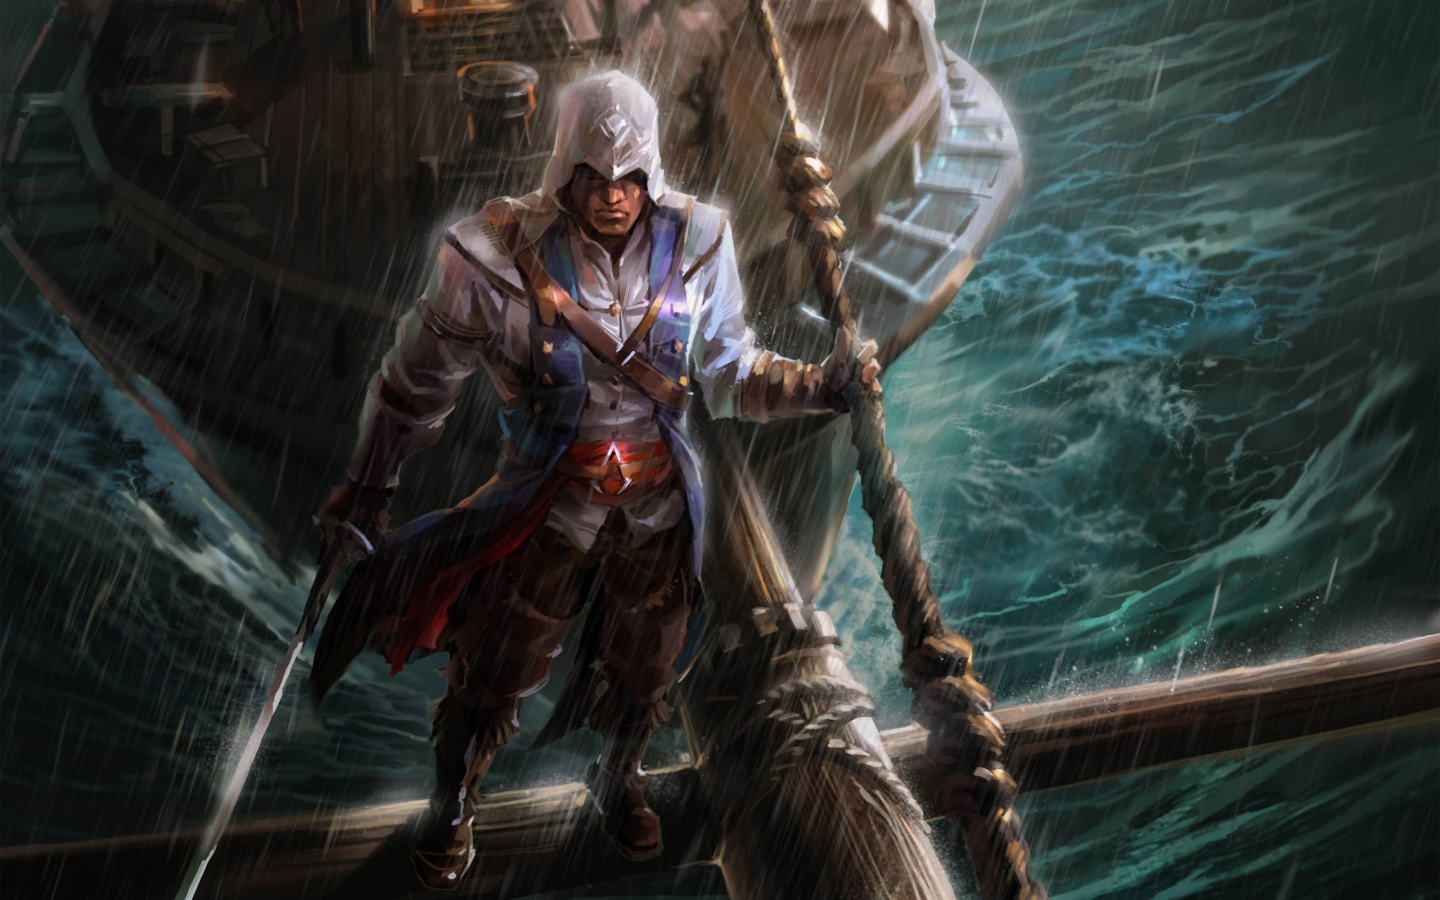 Assassins Creed Fan Art for 1440 x 900 widescreen resolution